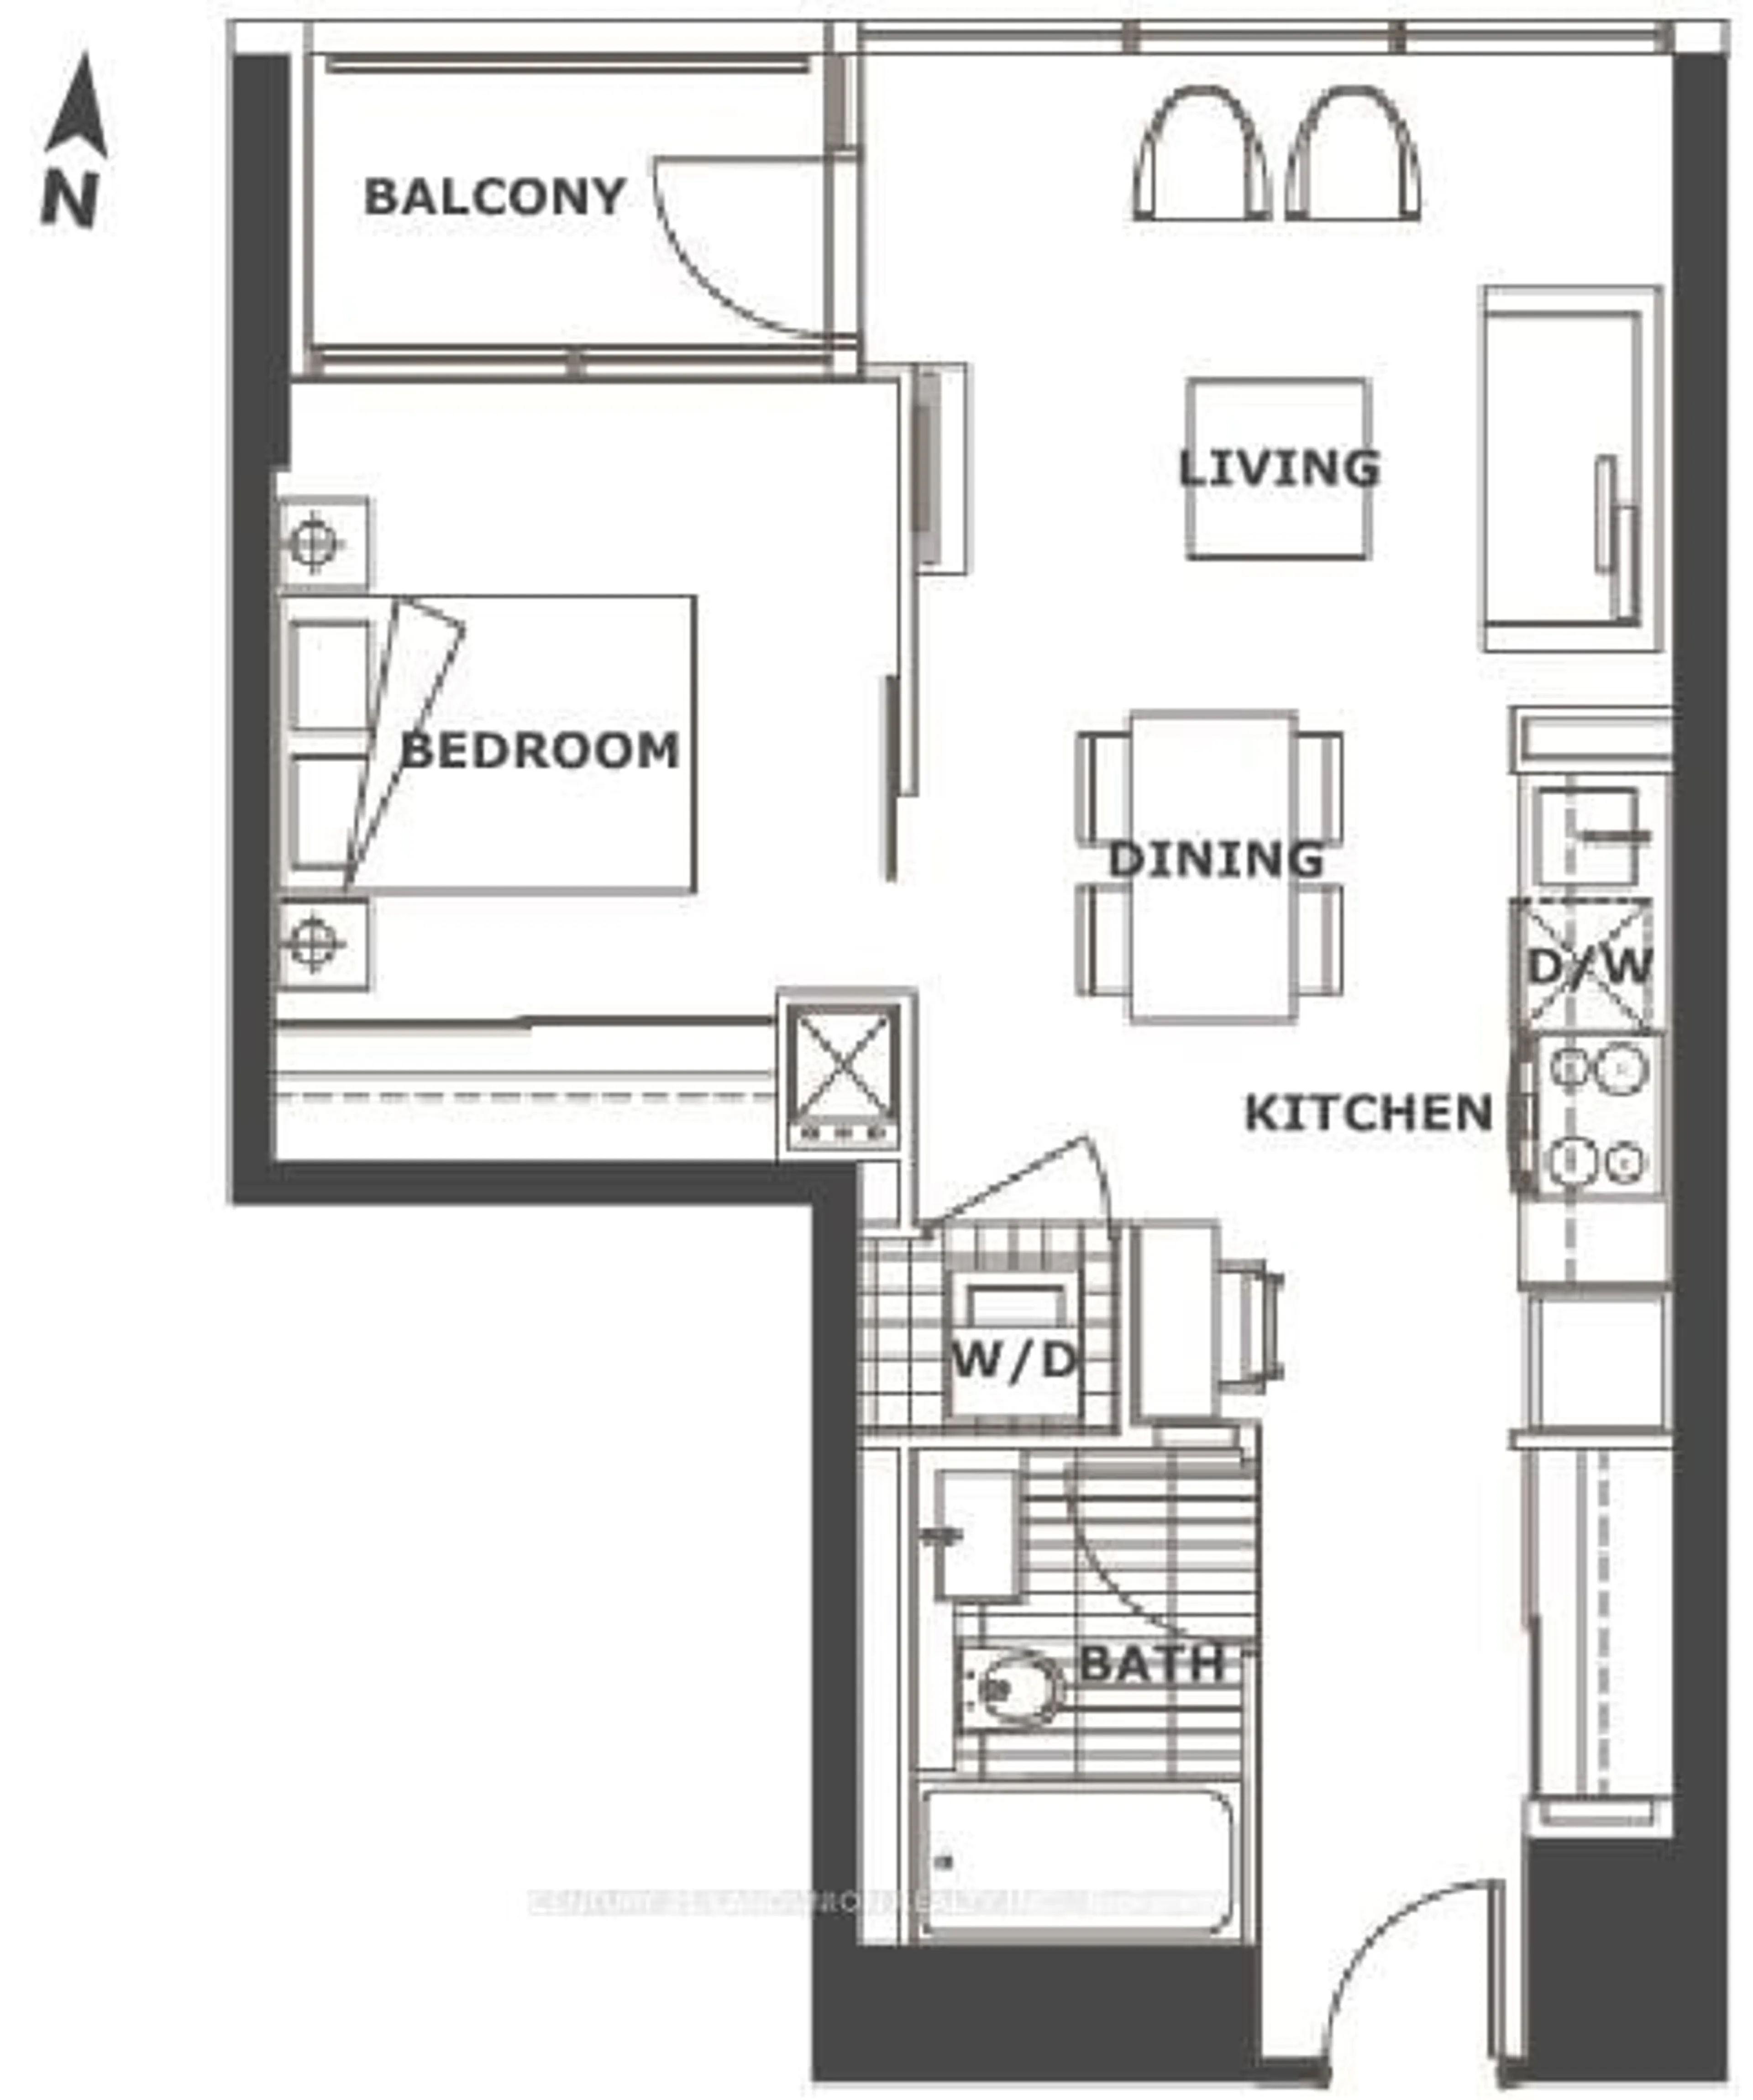 Floor plan for 25 Telelgram Mews #1601, Toronto Ontario M5V 3Z1